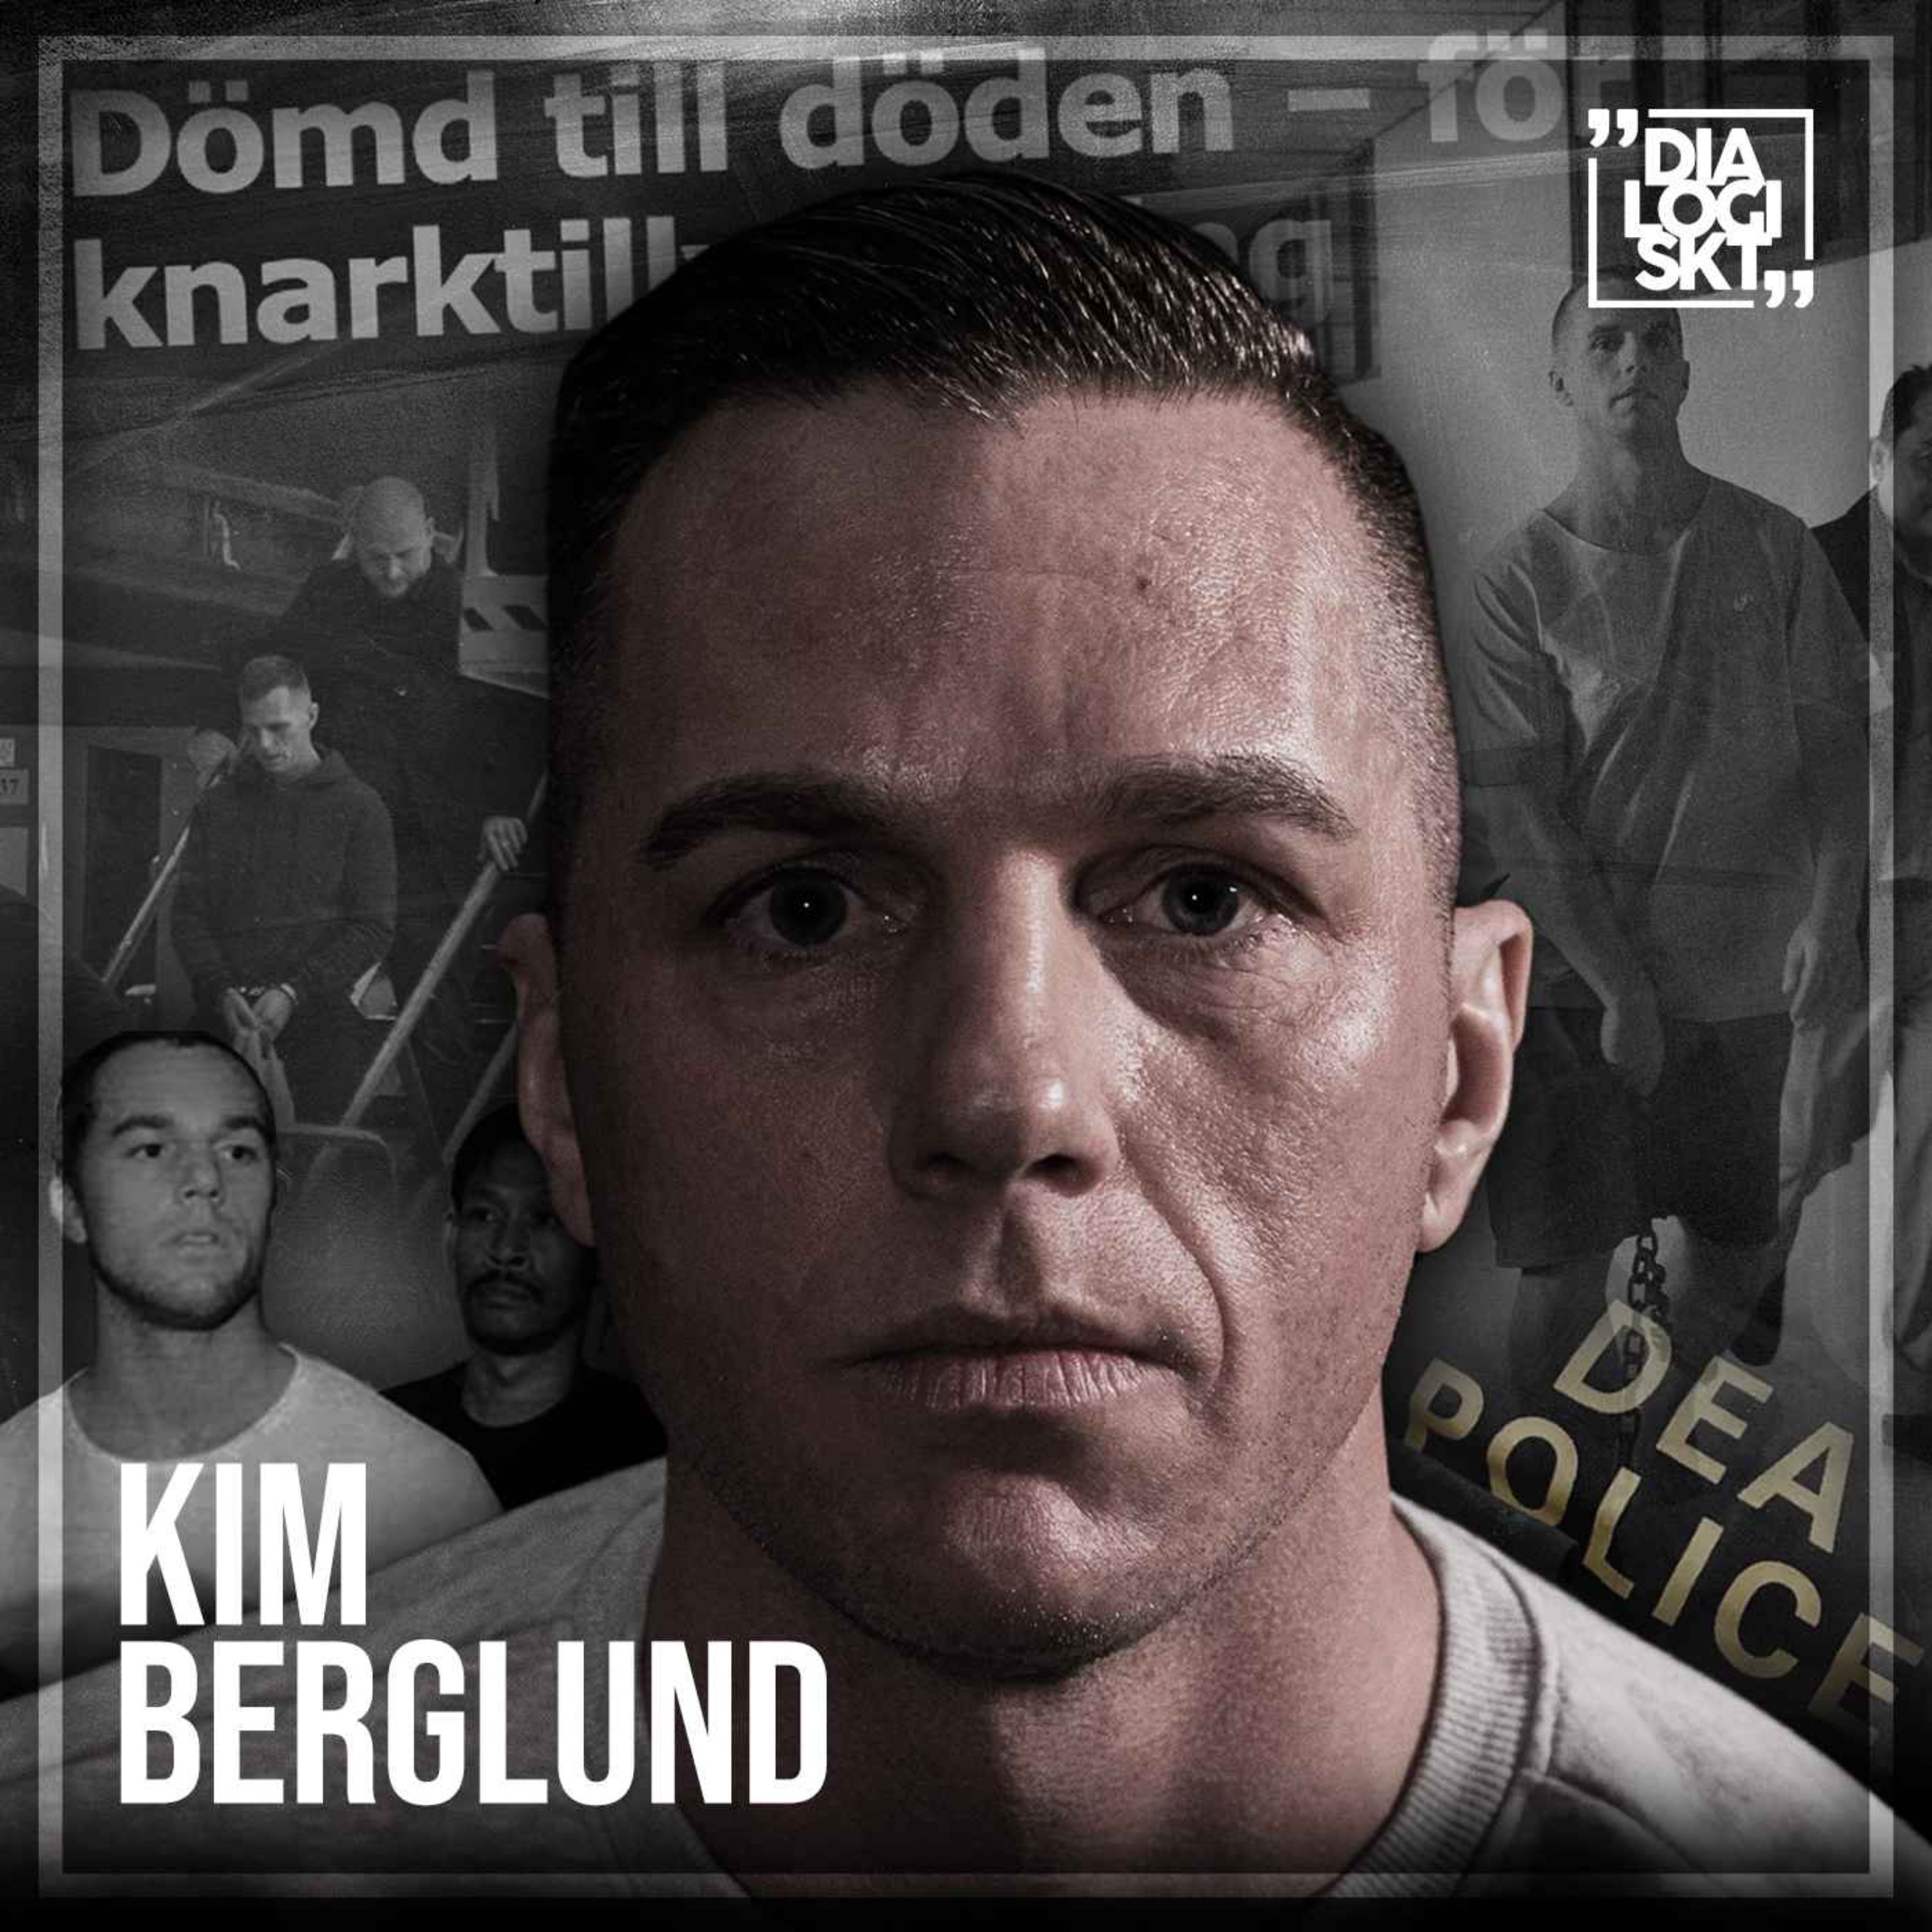 cover art for #145 Kim Berglund "DÖDSDÖMD I THAILAND"